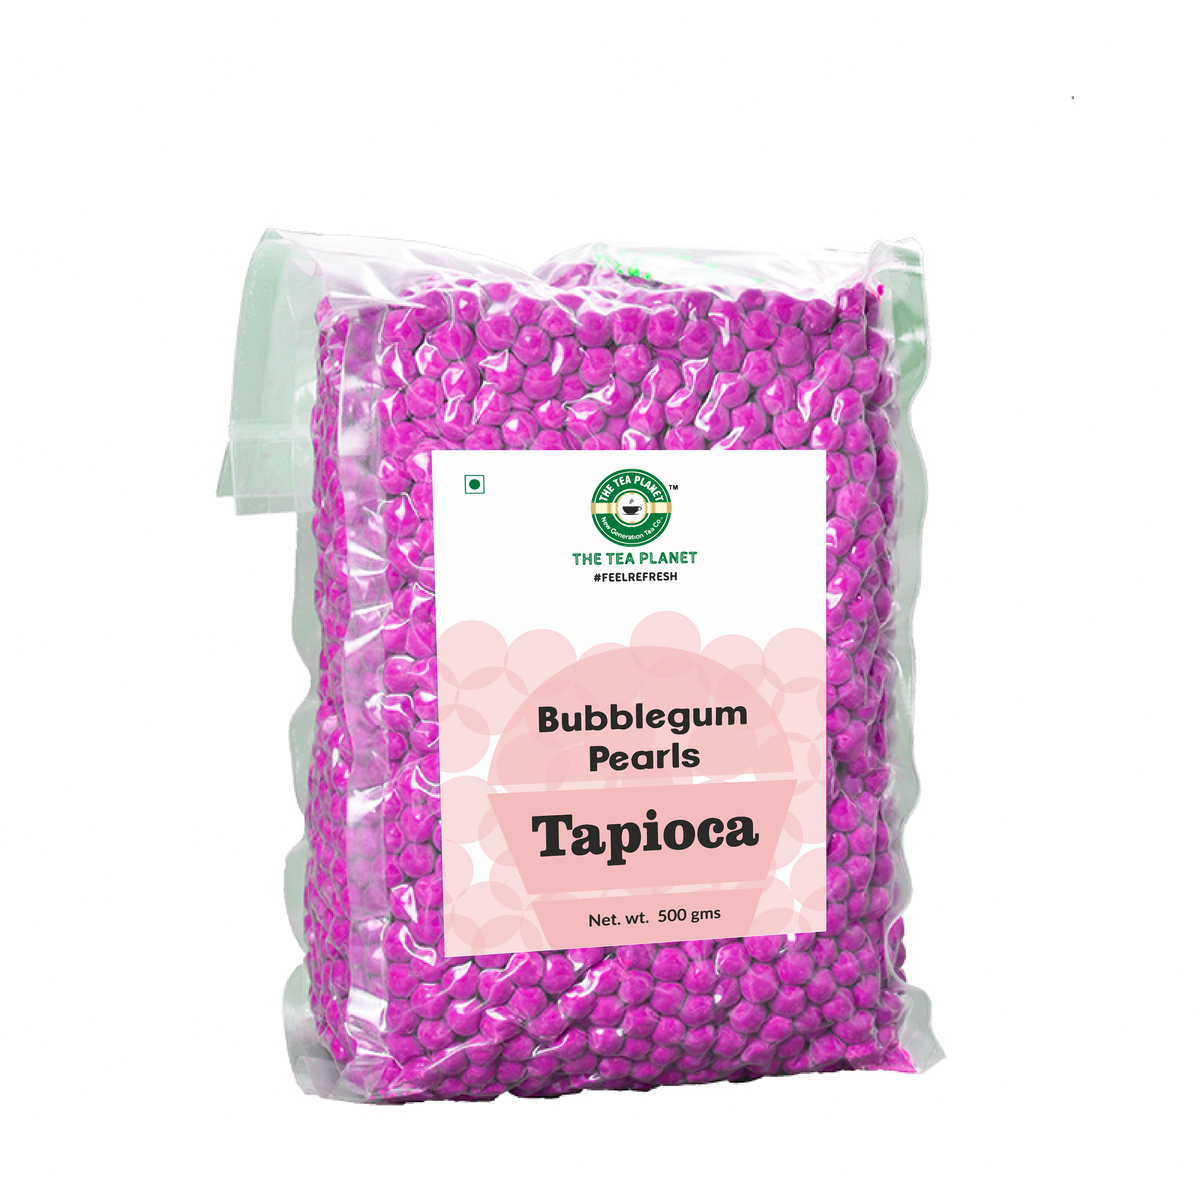 Bubblegum Tapioca Pearls - 500 gms